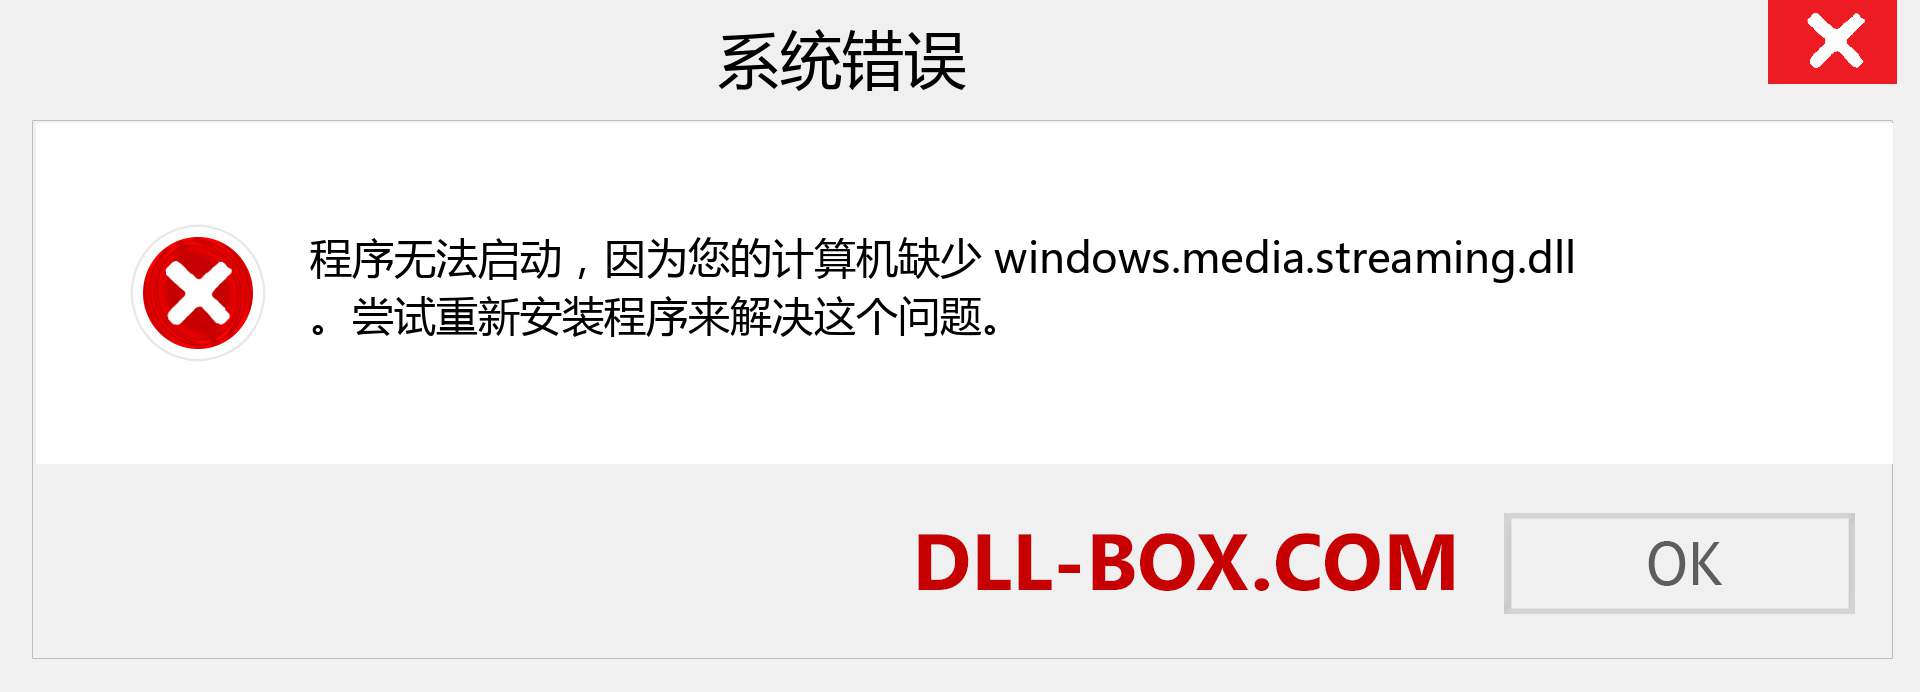 windows.media.streaming.dll 文件丢失？。 适用于 Windows 7、8、10 的下载 - 修复 Windows、照片、图像上的 windows.media.streaming dll 丢失错误